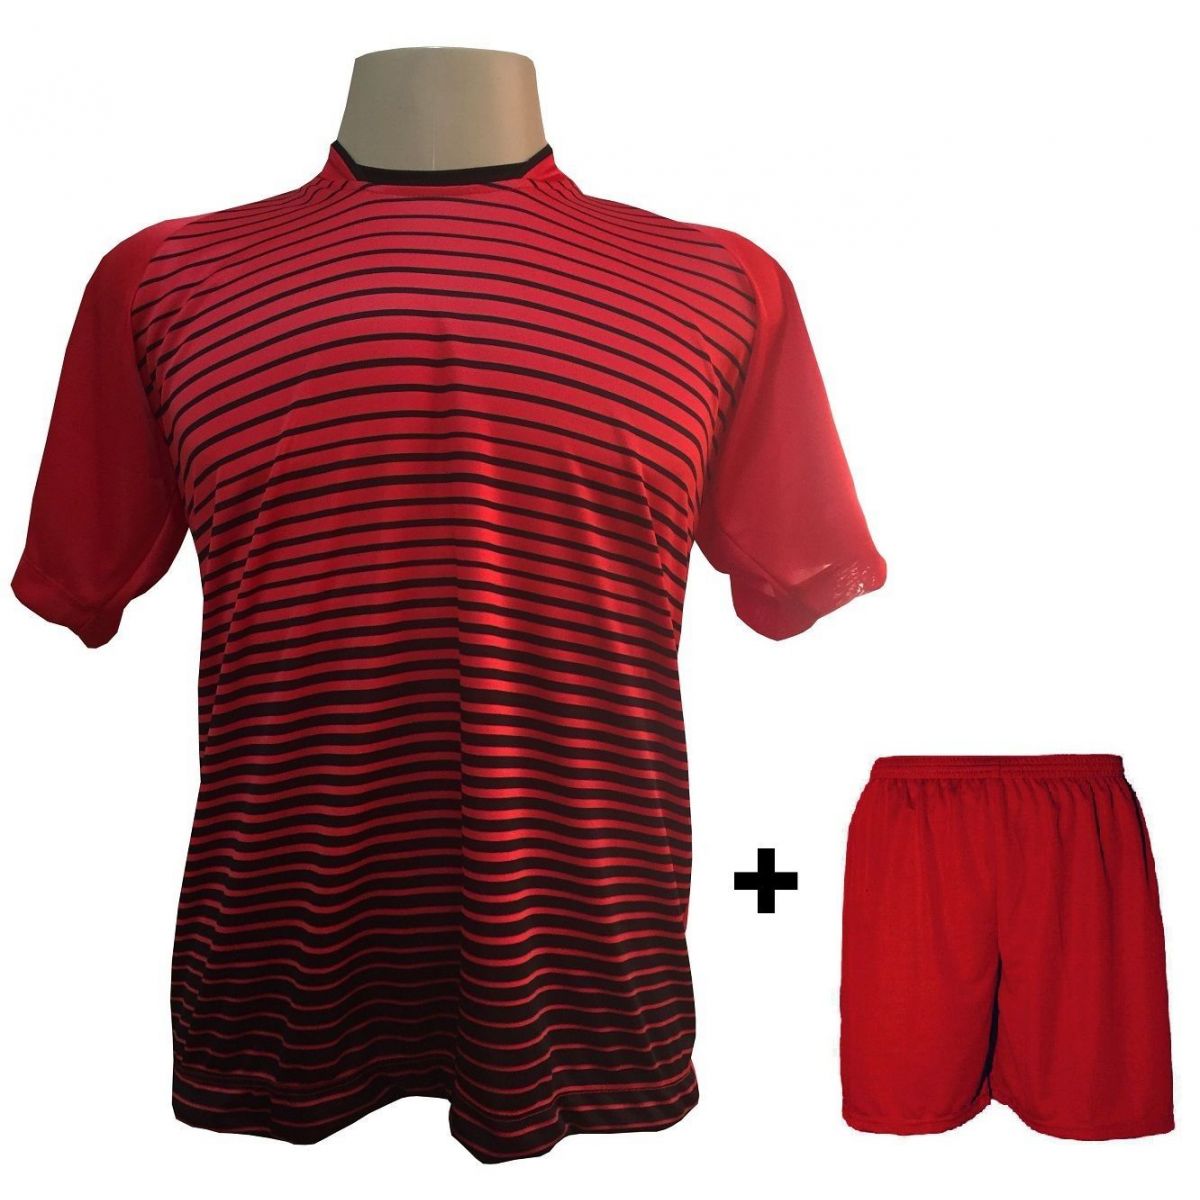 Uniforme Esportivo com 18 camisas modelo City Vermelho/Preto + 18 calções modelo Madrid Vermelho + Brindes